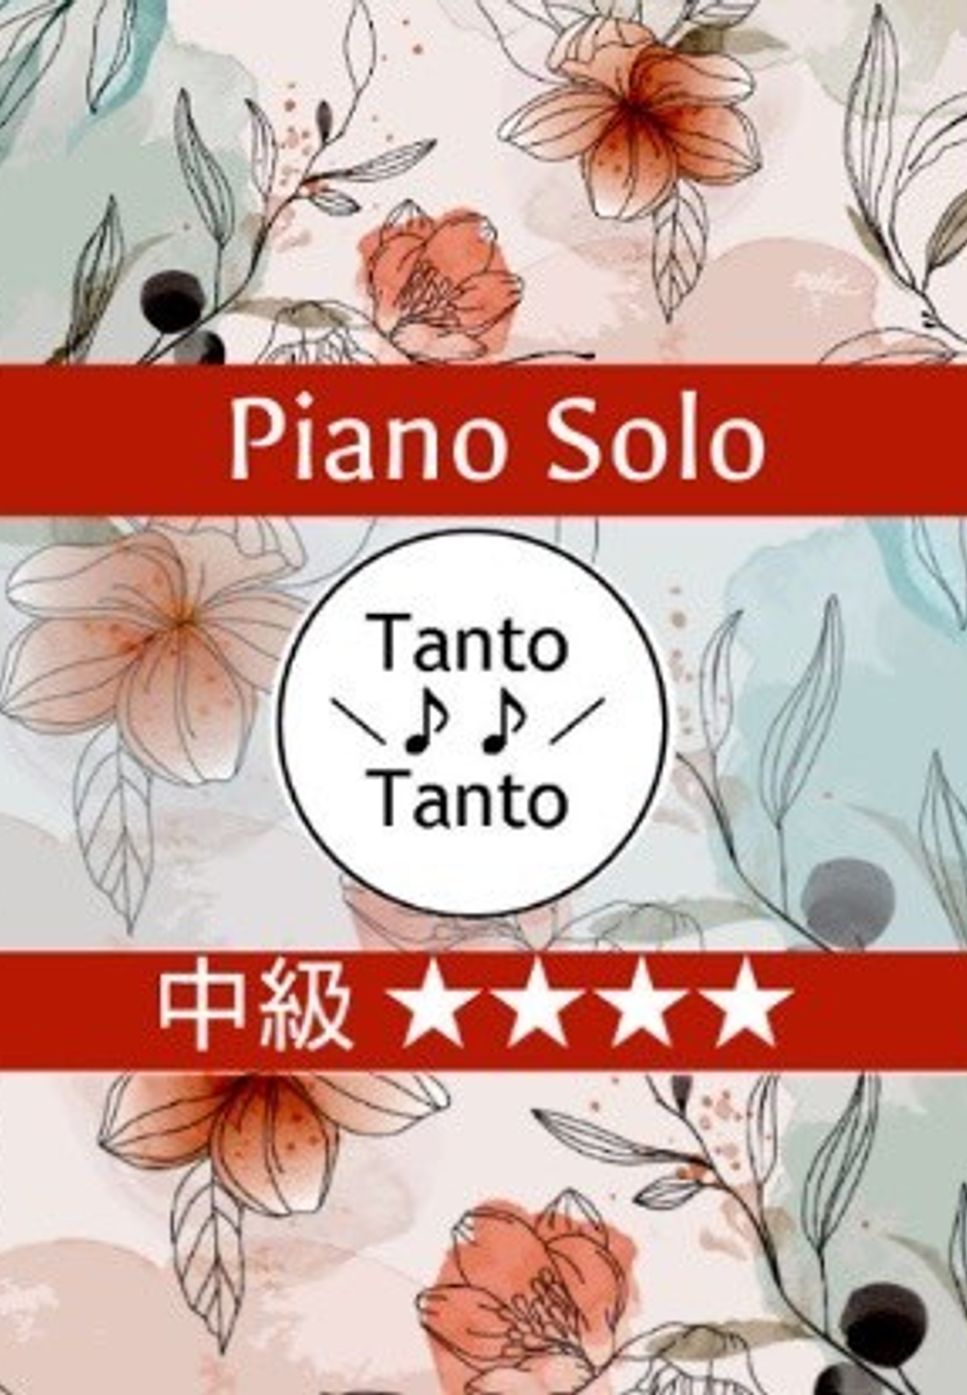 リー・ハーライン - When You Wish Upon a Star 星に願いを (Piano Solo in F) by Tanto Tanto